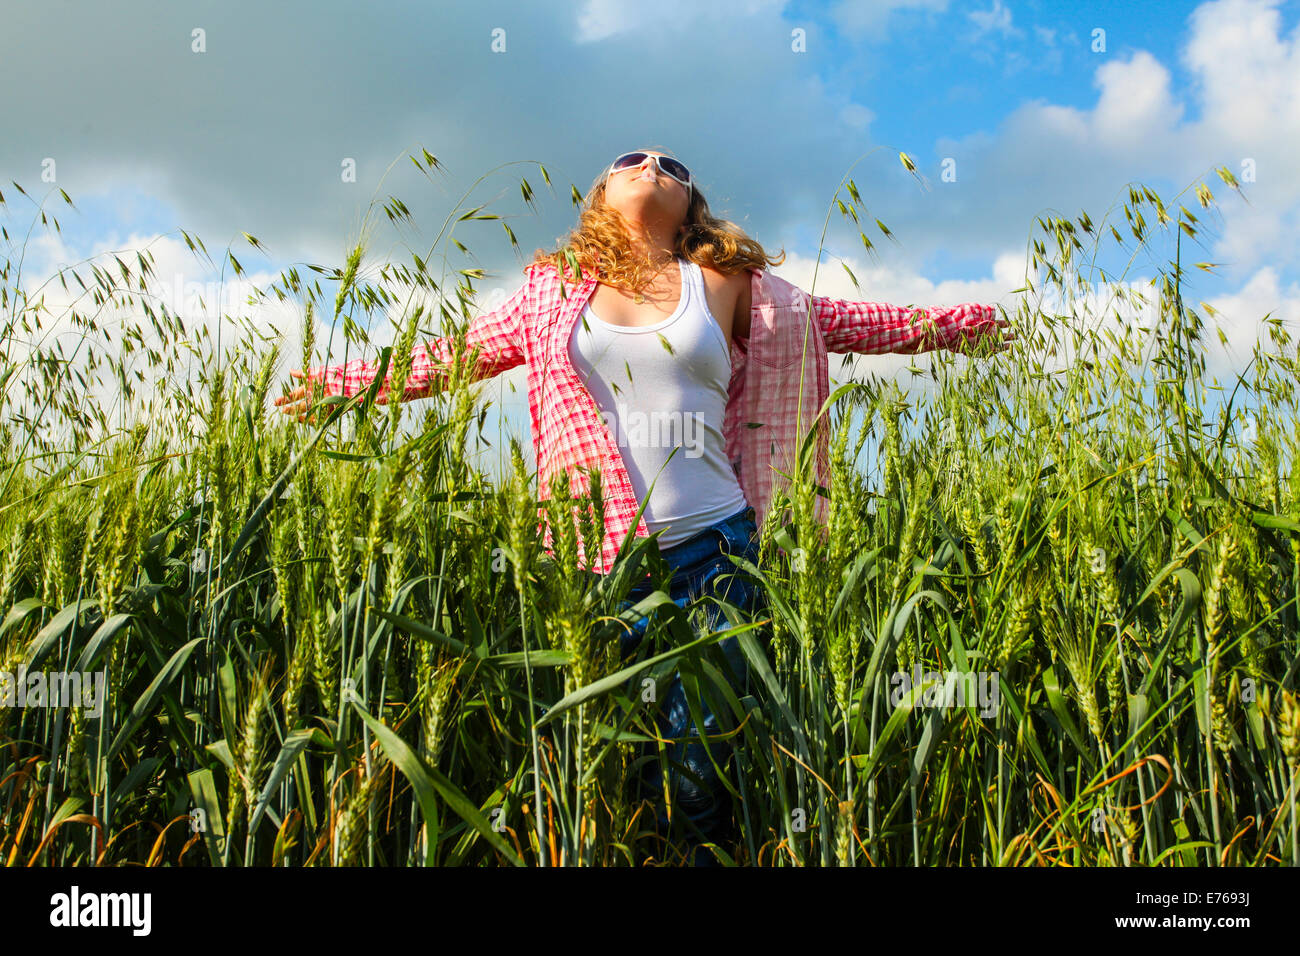 Porträt von einem 16 Jahre alten Teen Mädchen in einem Weizenfeld Modell veröffentlicht Stockfoto